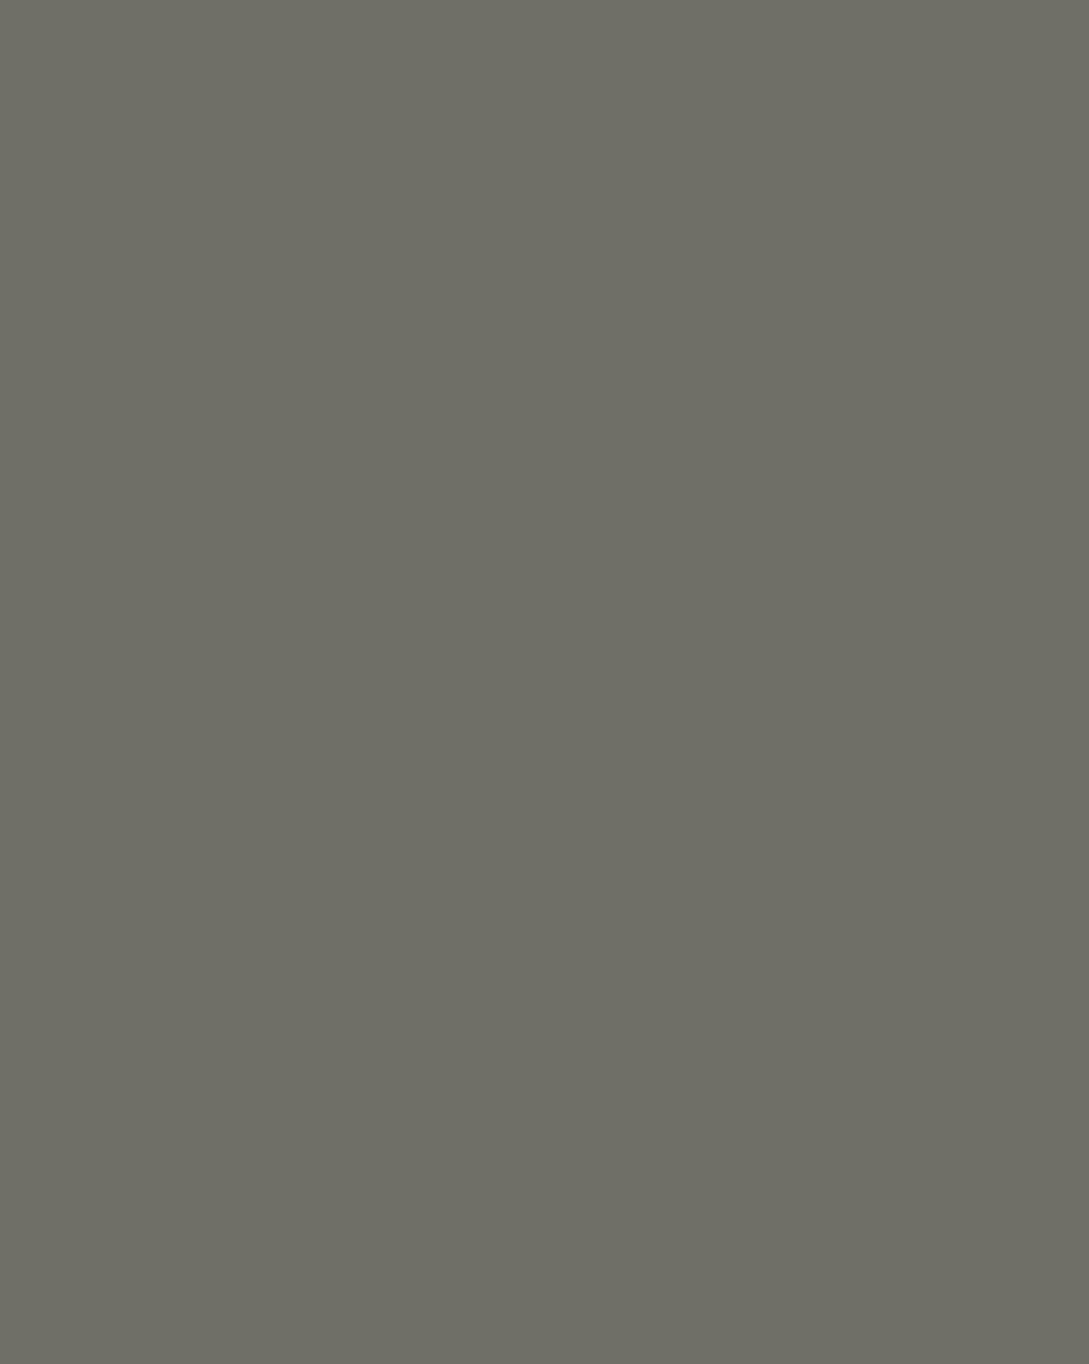 Василий Игнатов. Приметы клада разбойников. Три березы (фрагмент). 1978. Музейно-выставочный центр «Вортас», Усинск, Республика Коми